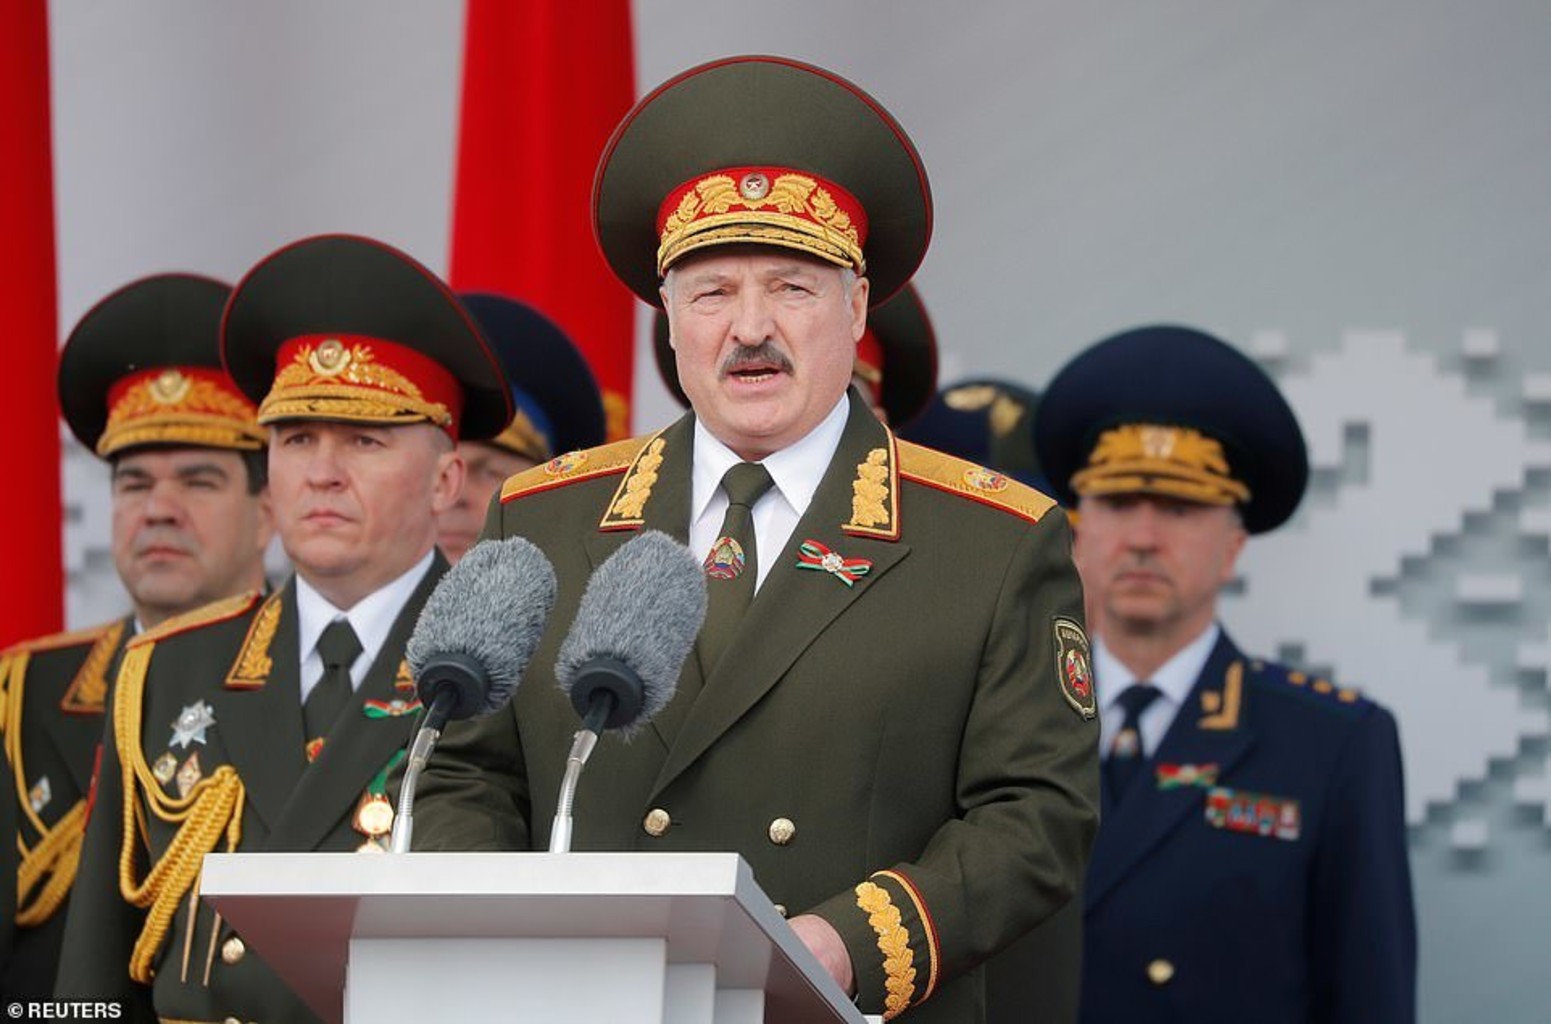 «Пусть попробуют, мы тут и не таким рога обламывали»: Лукашенко заявил о готовности к отражению военной угрозы со стороны Польши